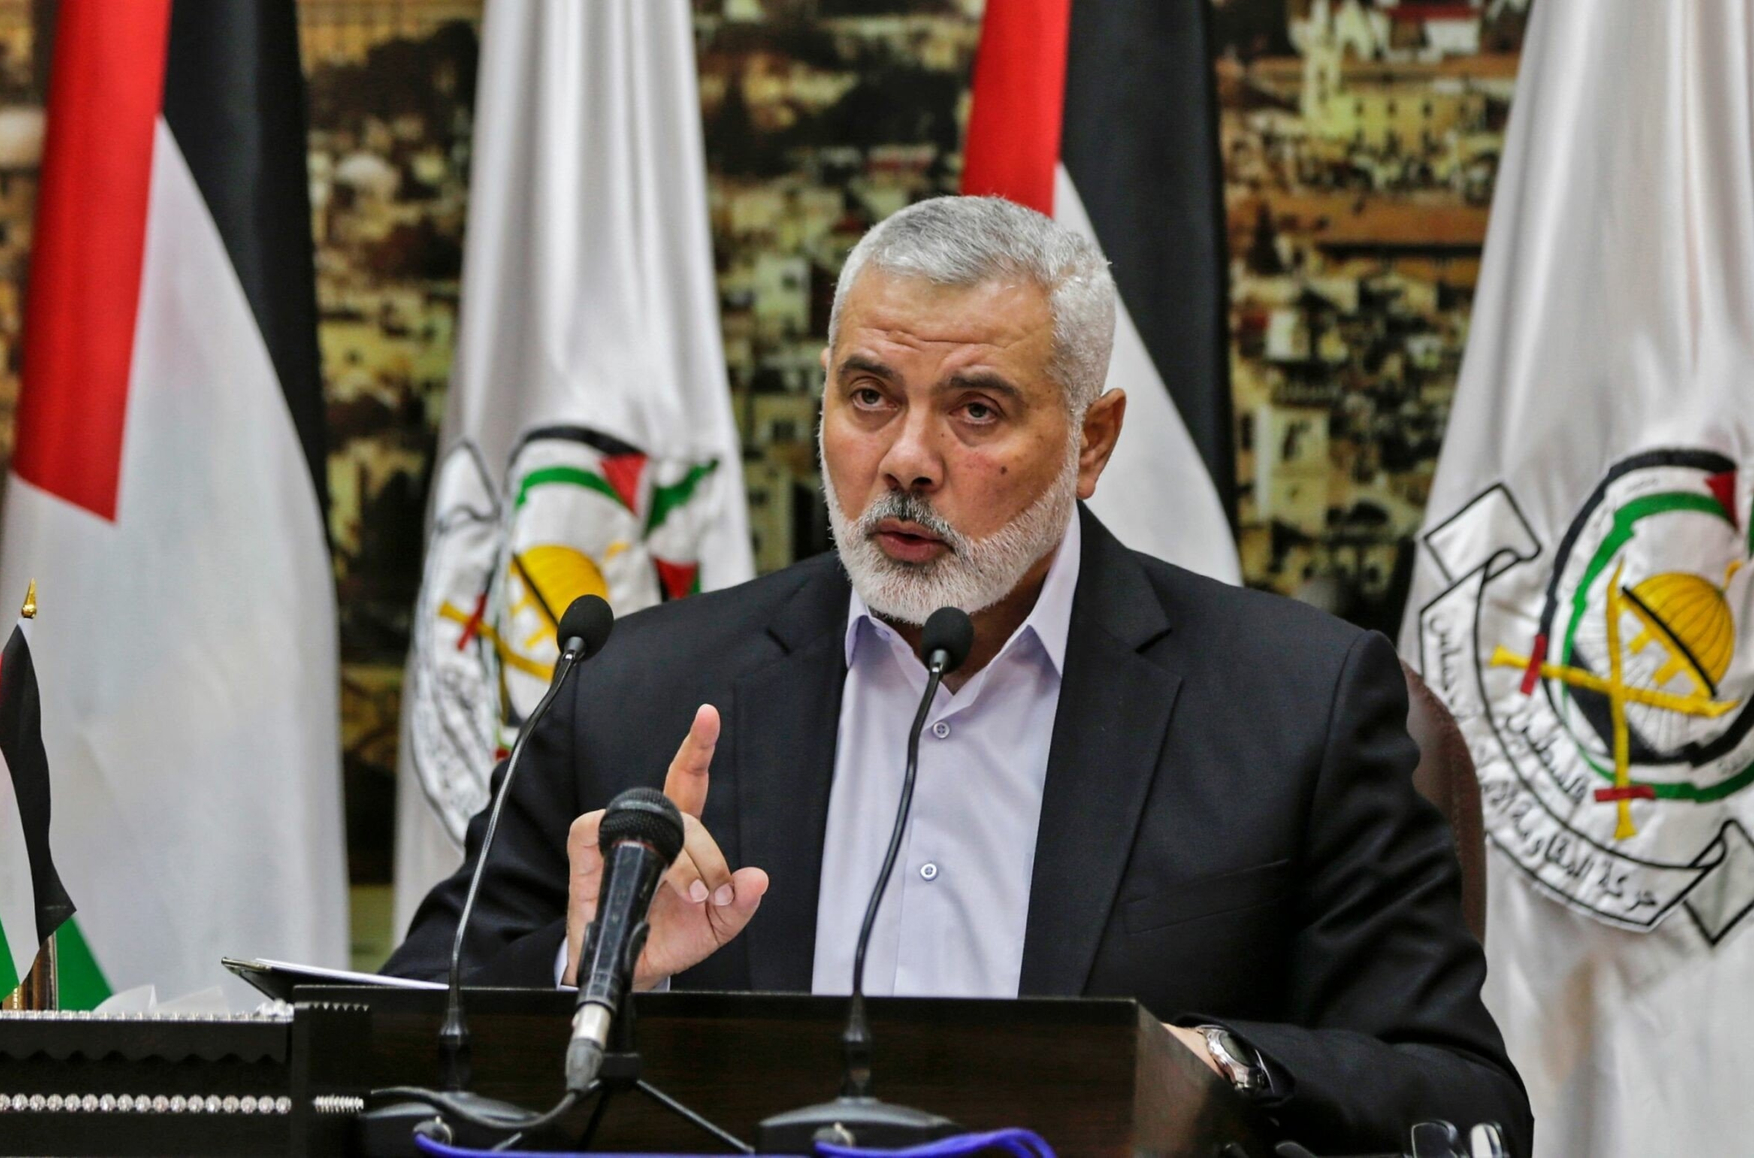 Словесные интервенции: Иран обещает Израилю возмездие за убийство лидера ХАМАС, но ответить ему нечем